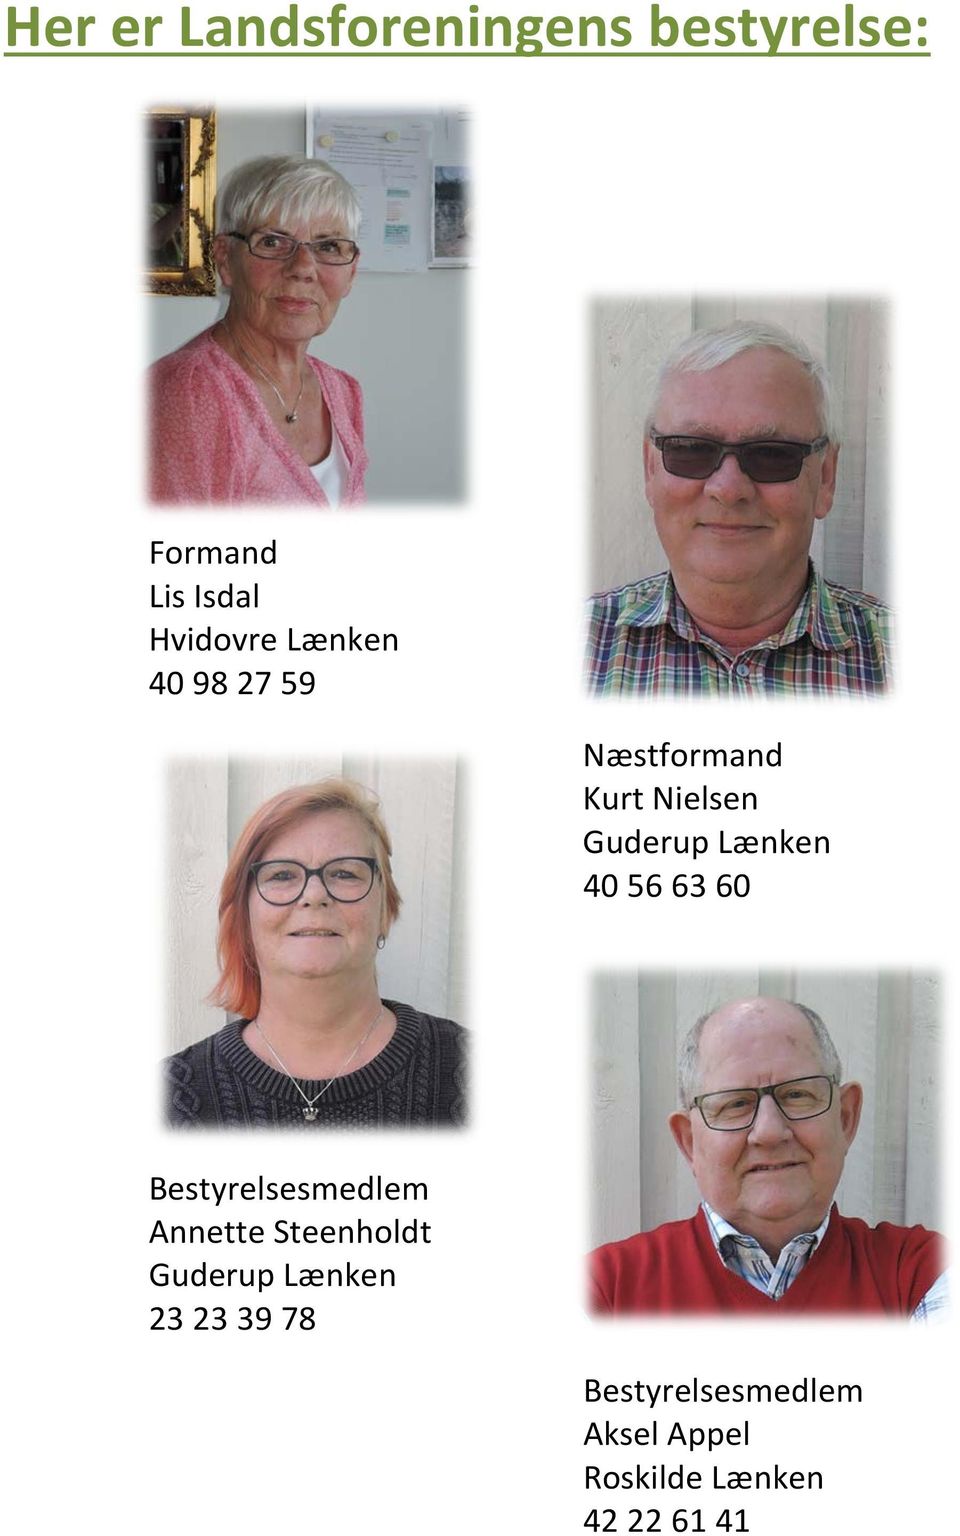 Guderup Lænken 40 56 63 60 Annette Steenholdt Guderup